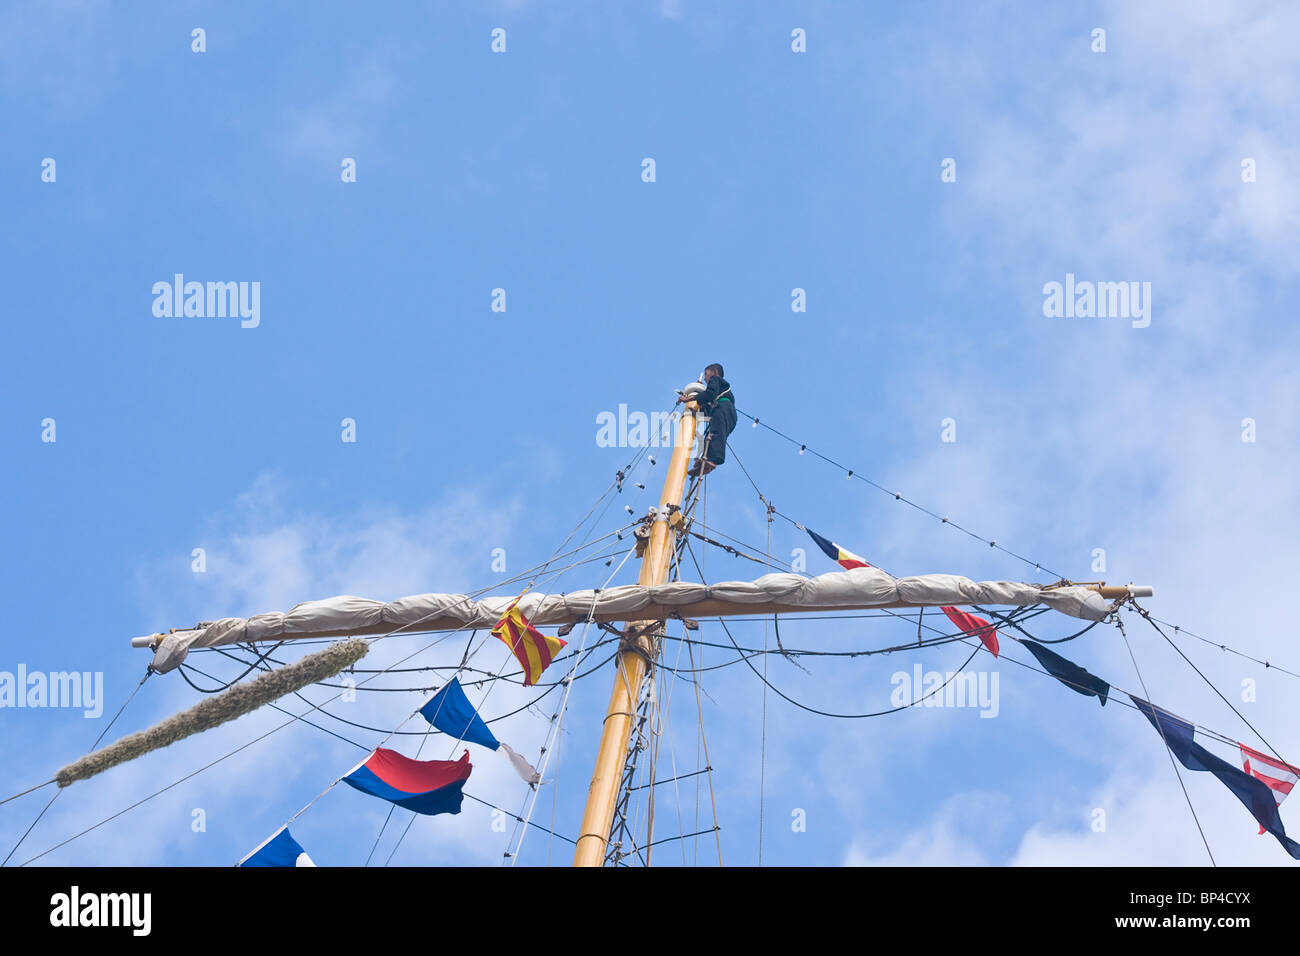 Marinero en la parte superior de la barquentine formast del velero el Dewaruci pertenecientes a la marina de Indonesia. Foto de stock